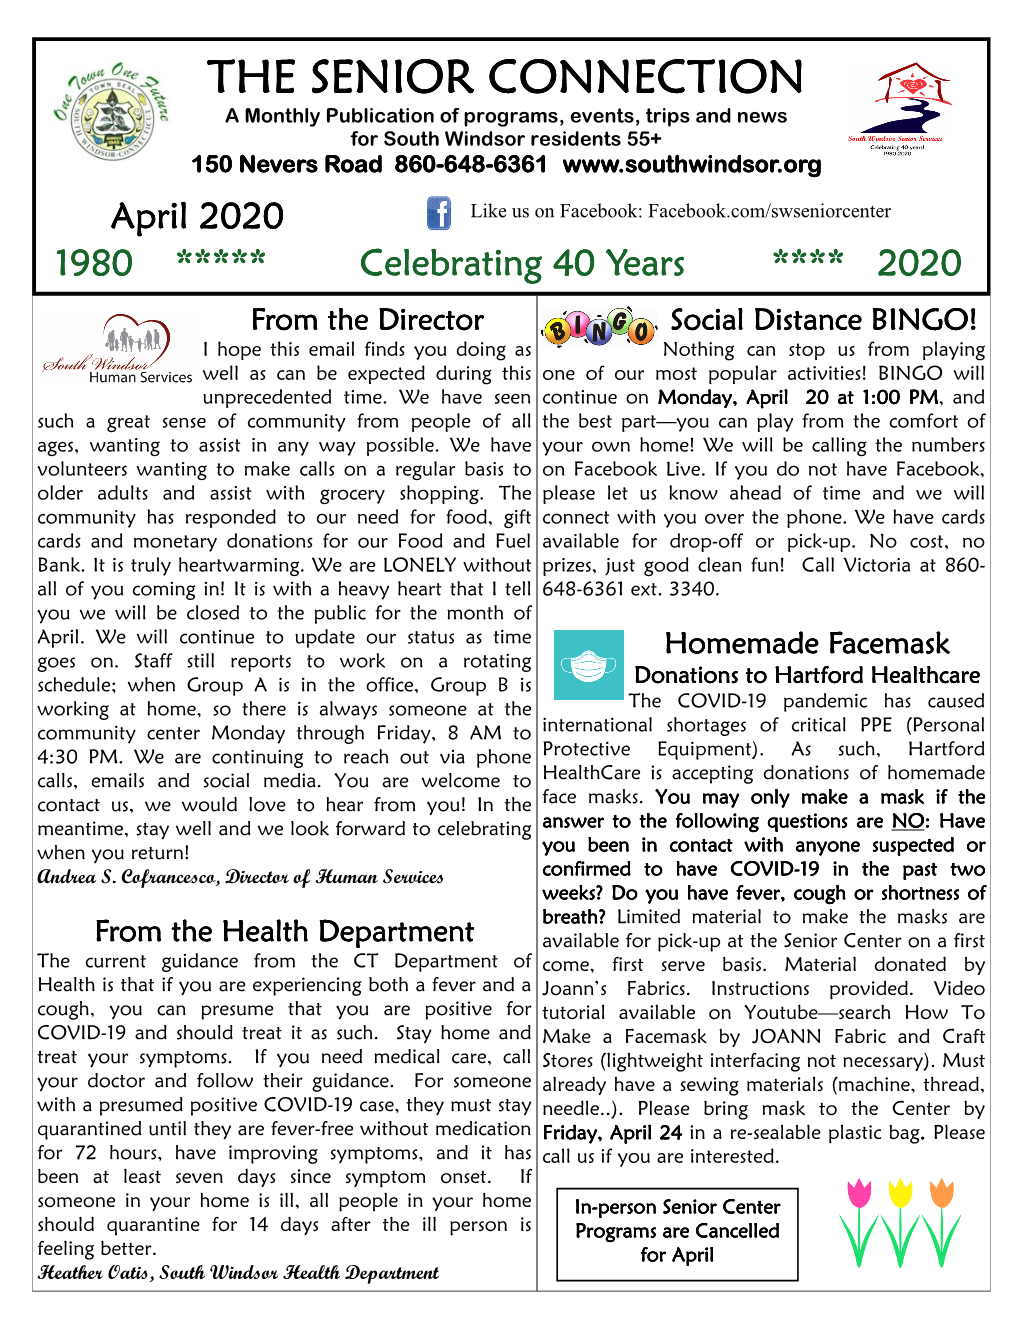 April 2020 Senior Newsletter